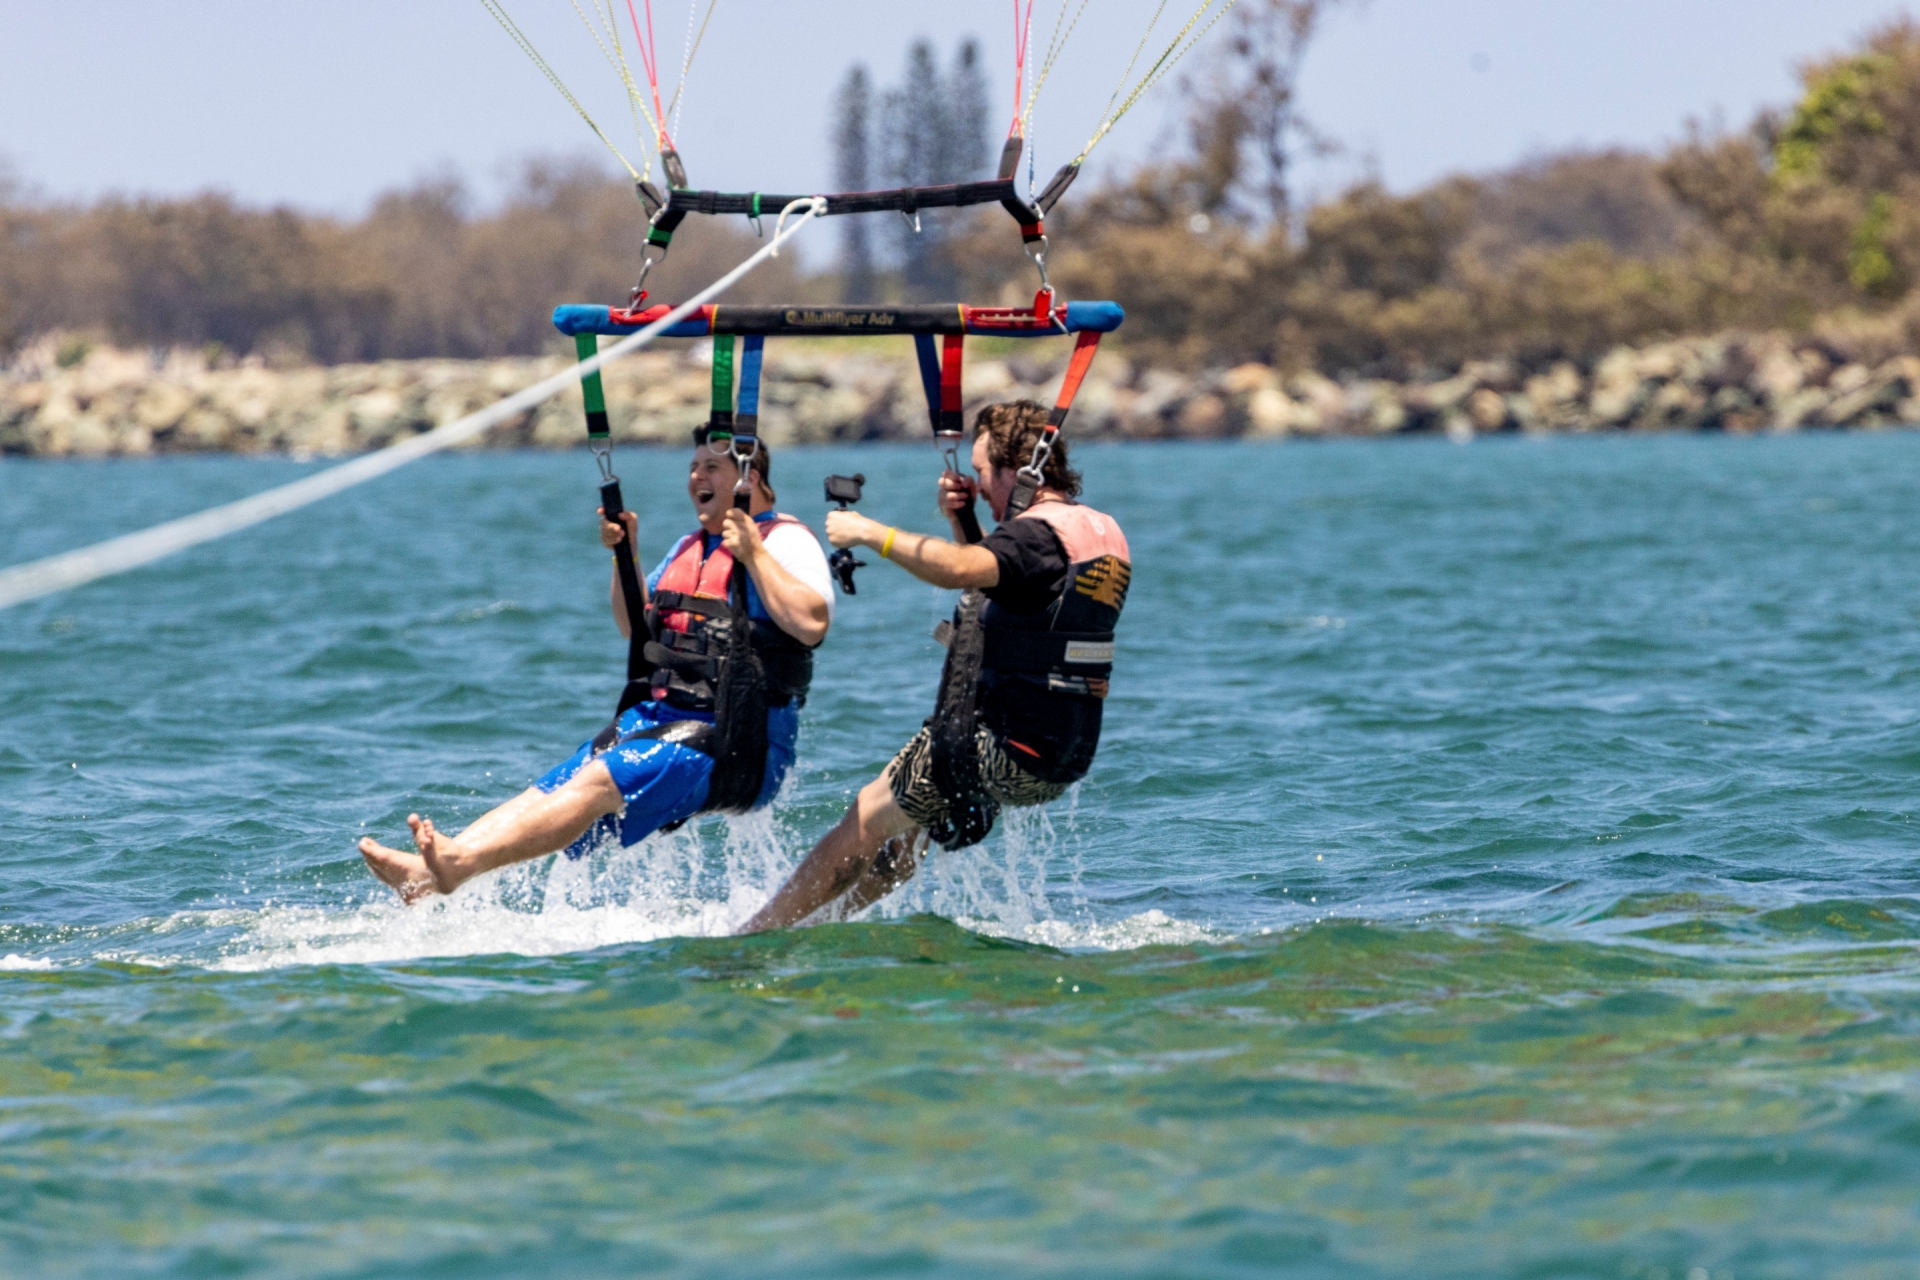 昆士兰州，黄金海岸，黄金海岸水上运动，一名患有神经分化症的男子与另一名男子一起参加滑翔伞运动 © 昆士兰州旅游及活动推广局版权所有